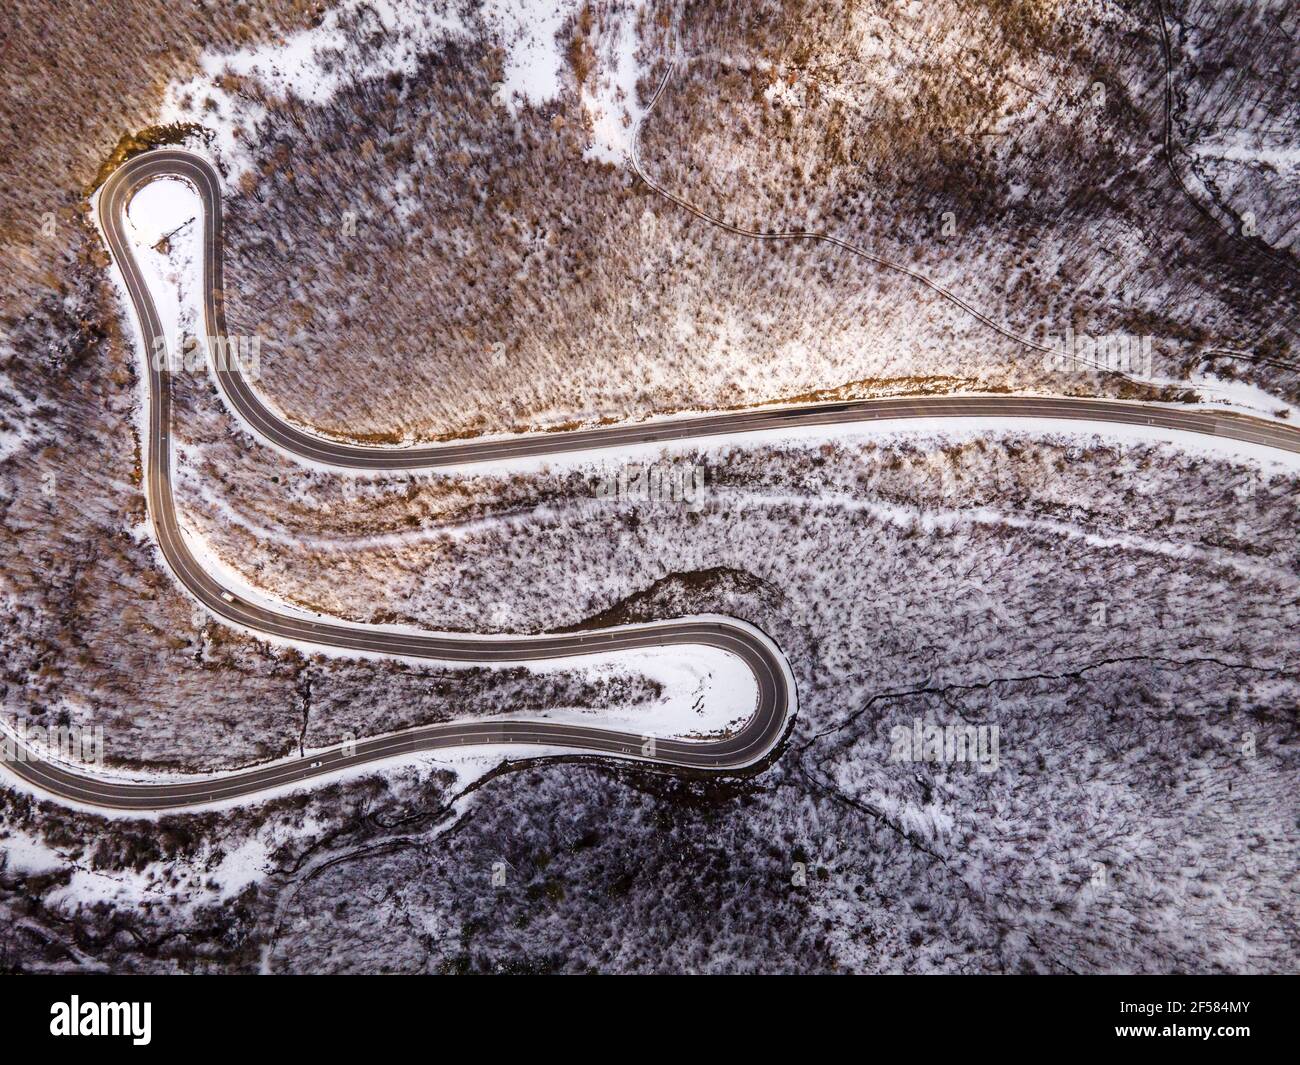 Vista aerea ad angolo alto immagine drone sulla serpentina curva strada attraverso gli alberi e la foresta in catena montuosa con Neve bianca nella giornata invernale vicino a Knja Foto Stock